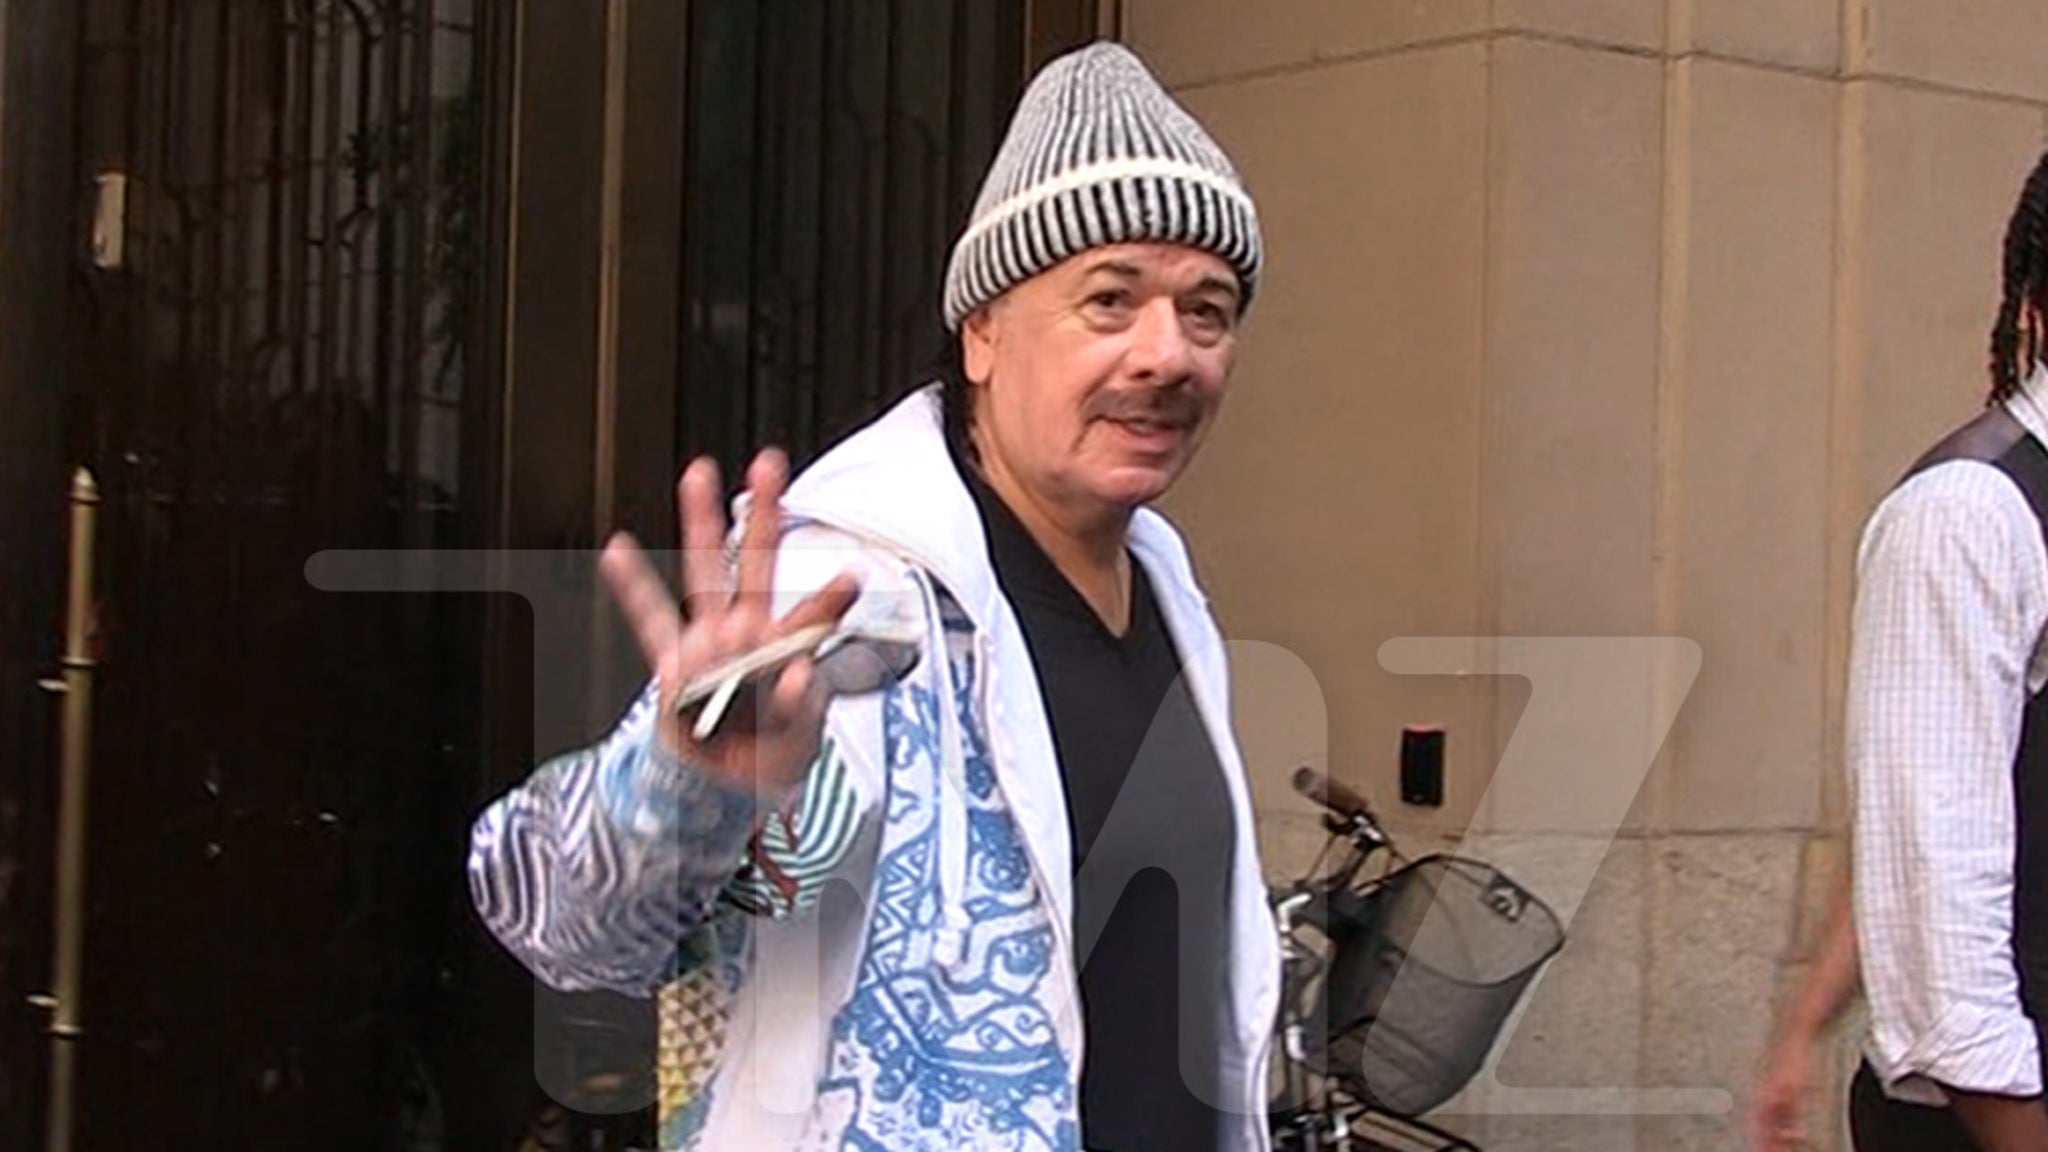 Carlos Santana Smiling and Looking Good…